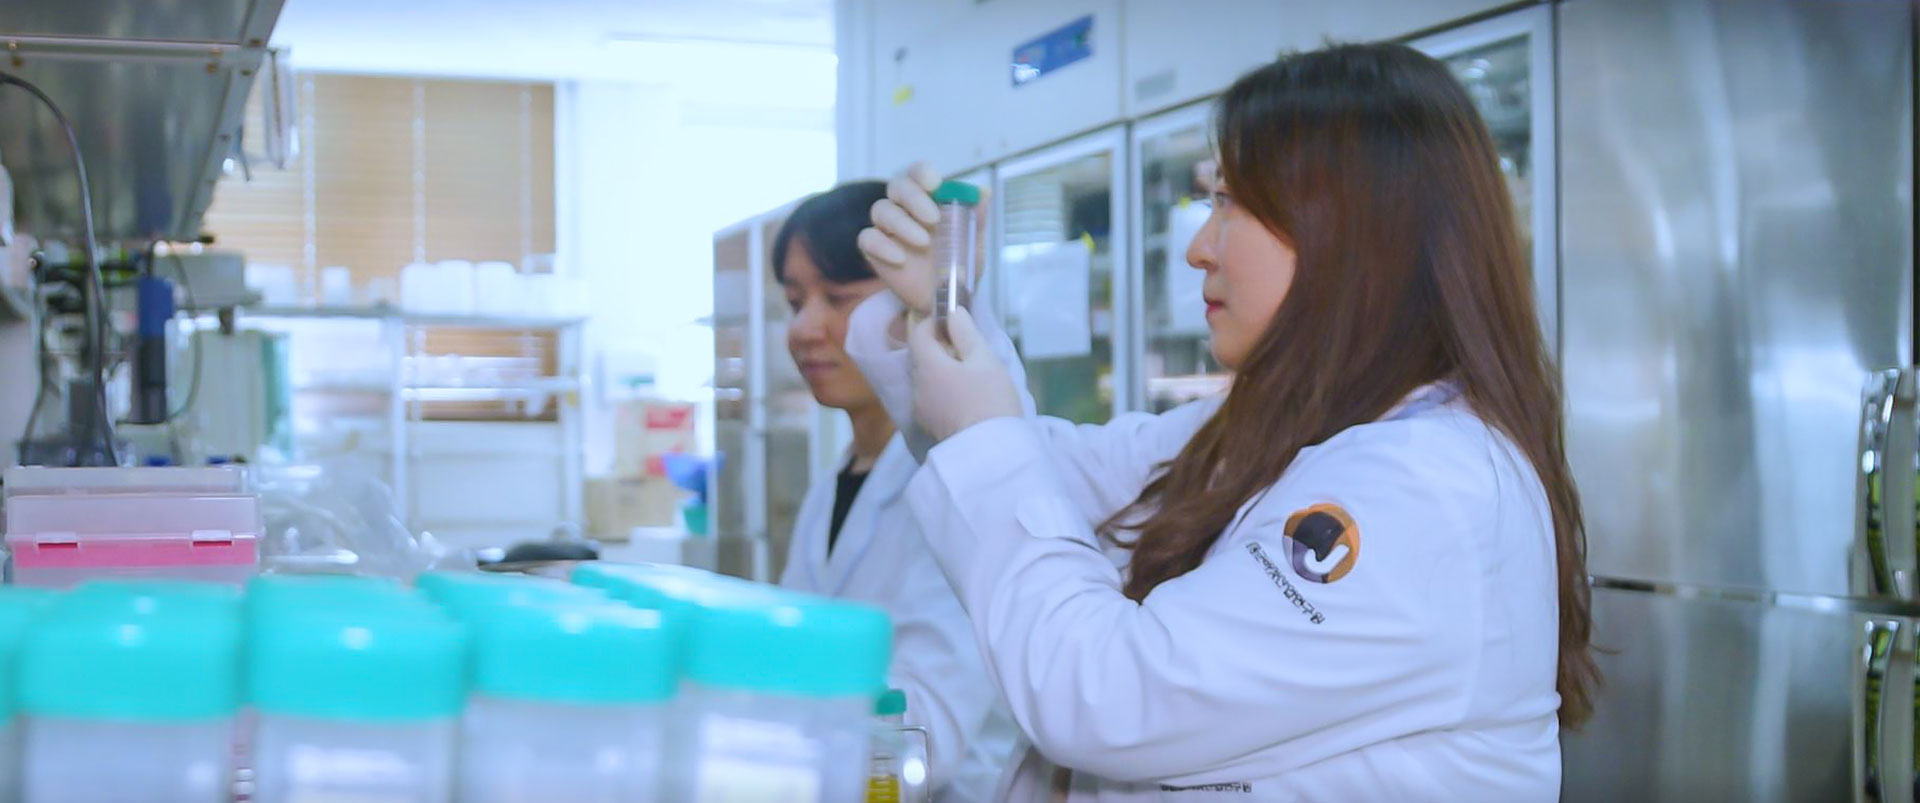 실험실에서 흰색 가운을 입은 여자 연구원이 실험장비의 눈금을 보며 실험을 하는 모습